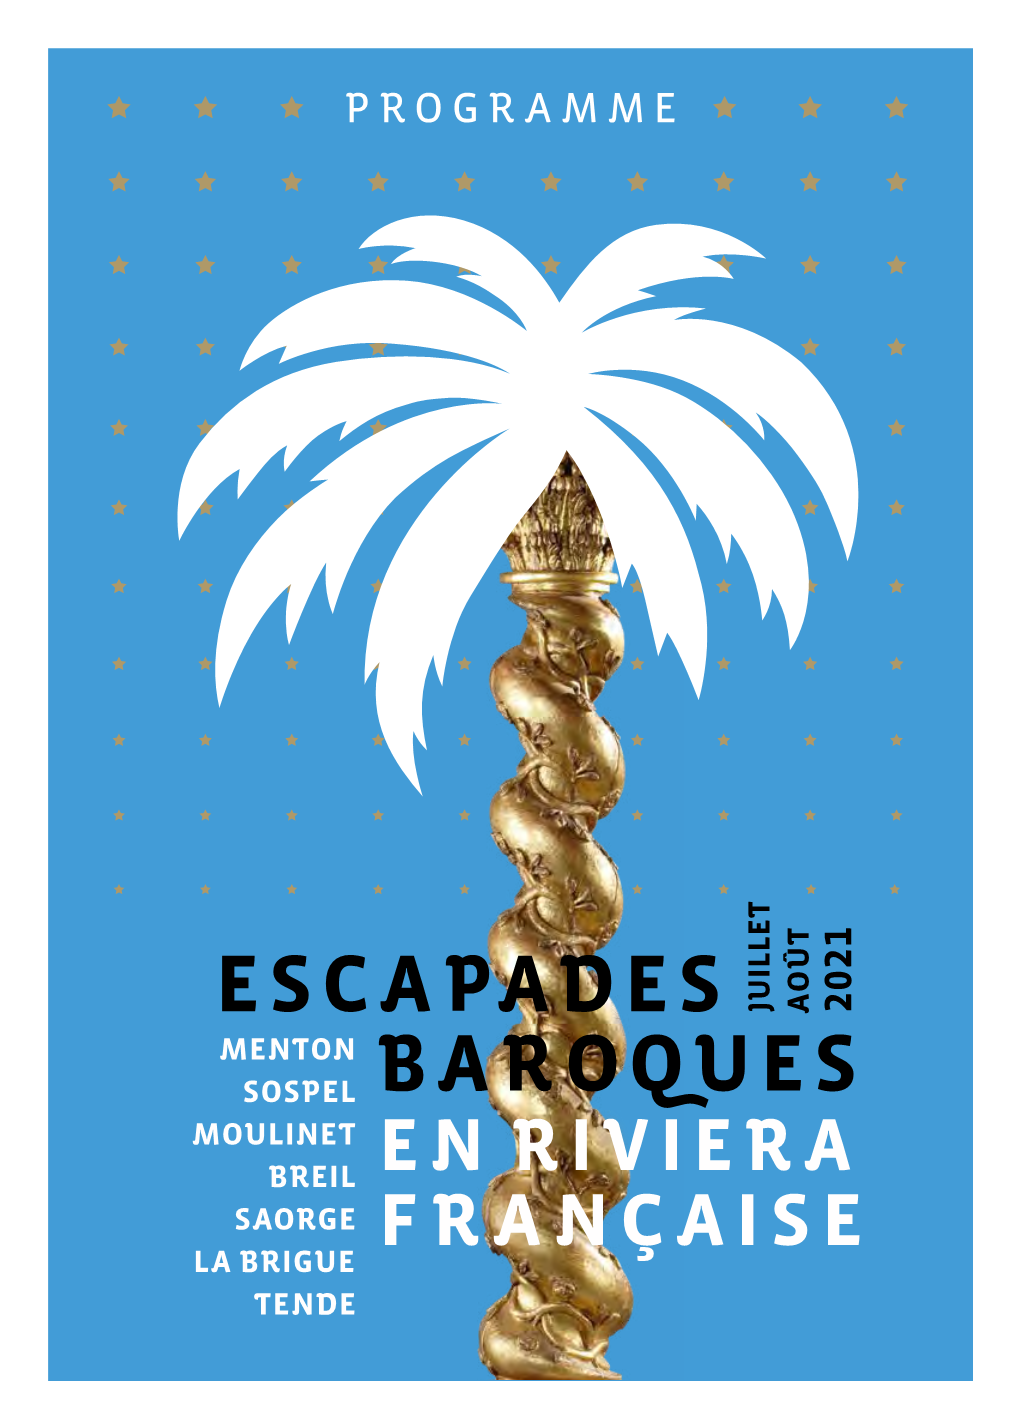 Le Programme Des Escapades Baroques En Riviera Française